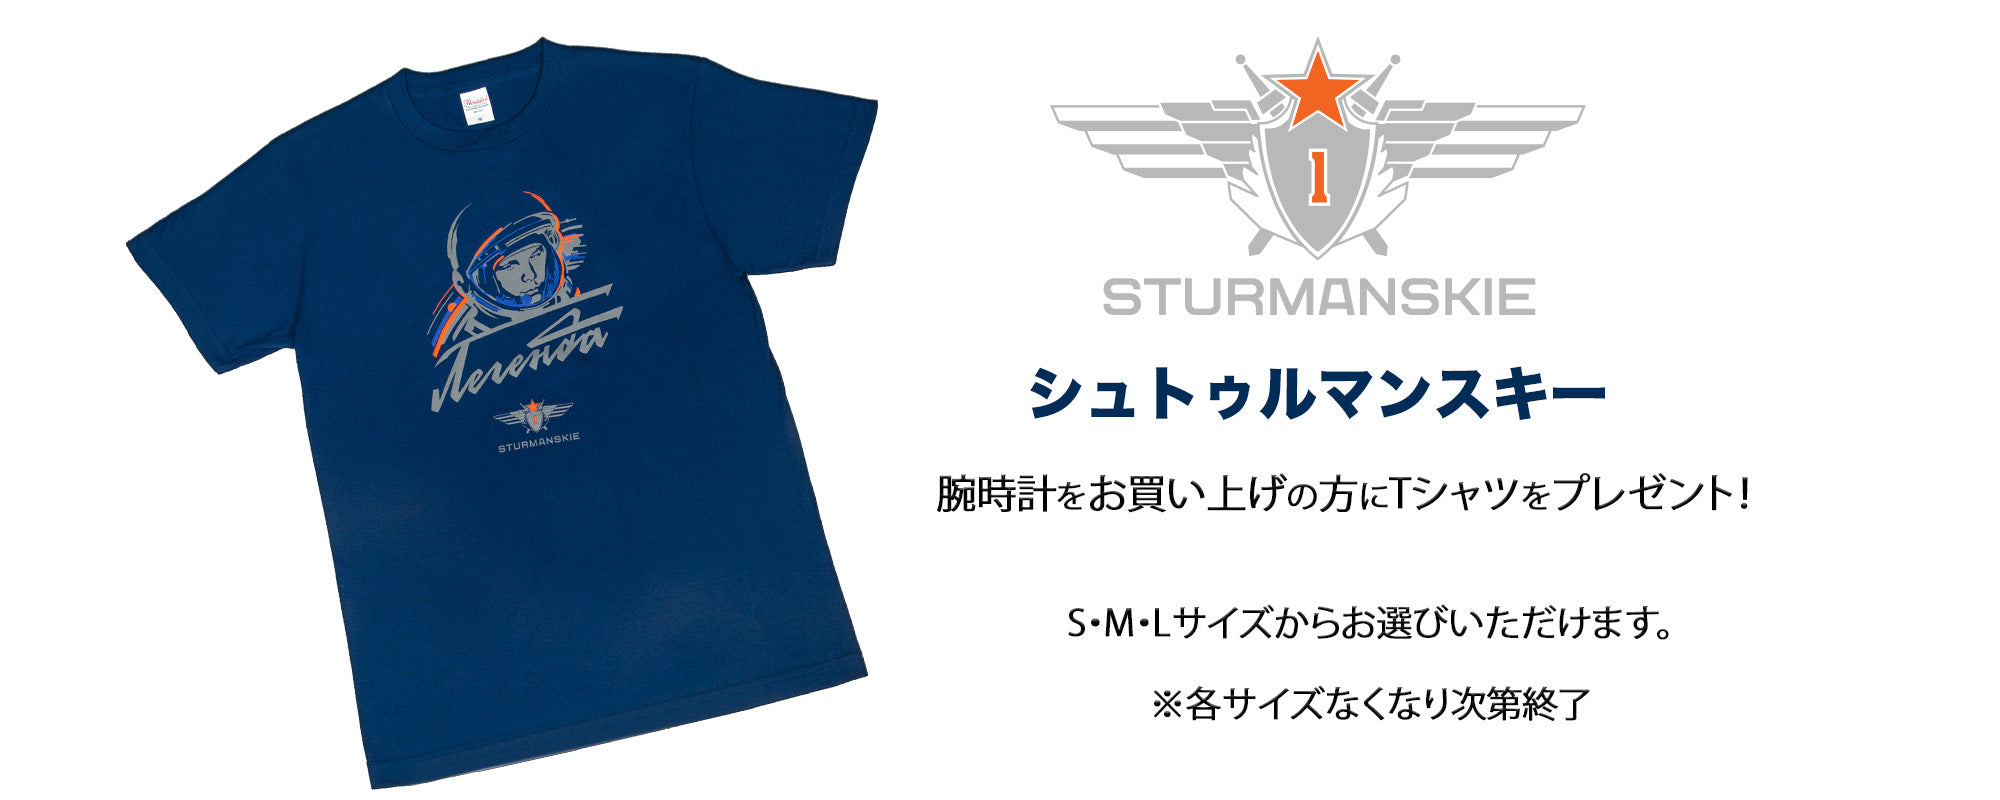 史上初の宇宙時計STURMANSKIEシュトゥルマンスキー日本公サイト – sturmanskie-jp